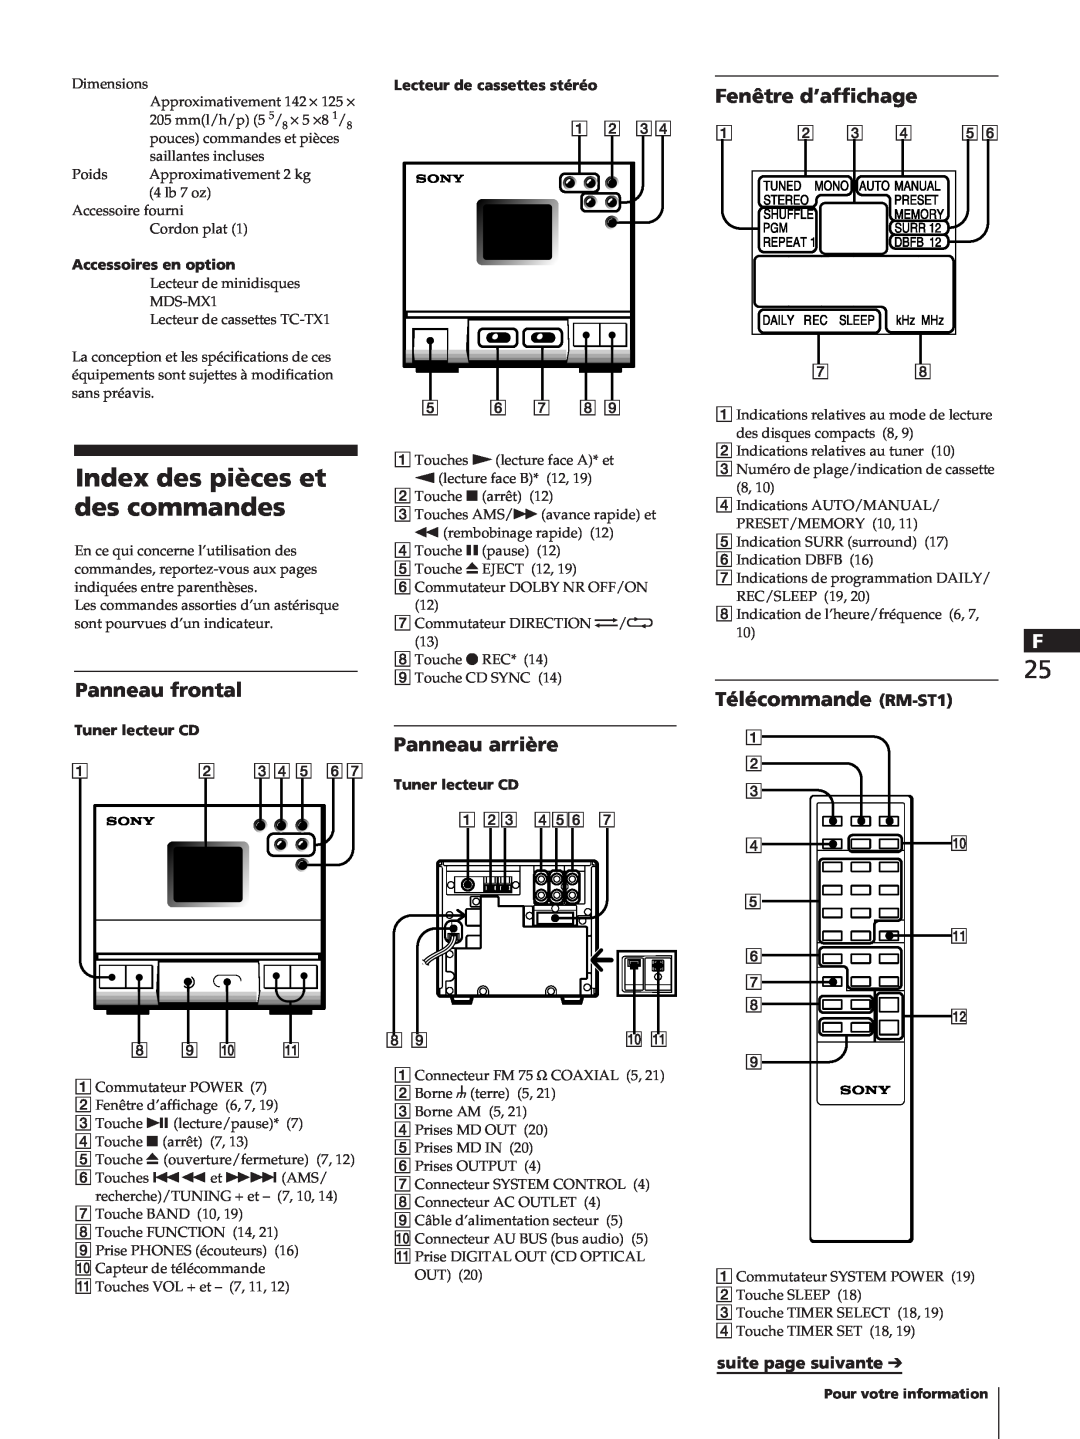 Sony TC-TX1 Fenêtre d’affichage, Panneau frontal, Panneau arrière, Télécommande RM-ST1, suite page suivante, Dimensions 